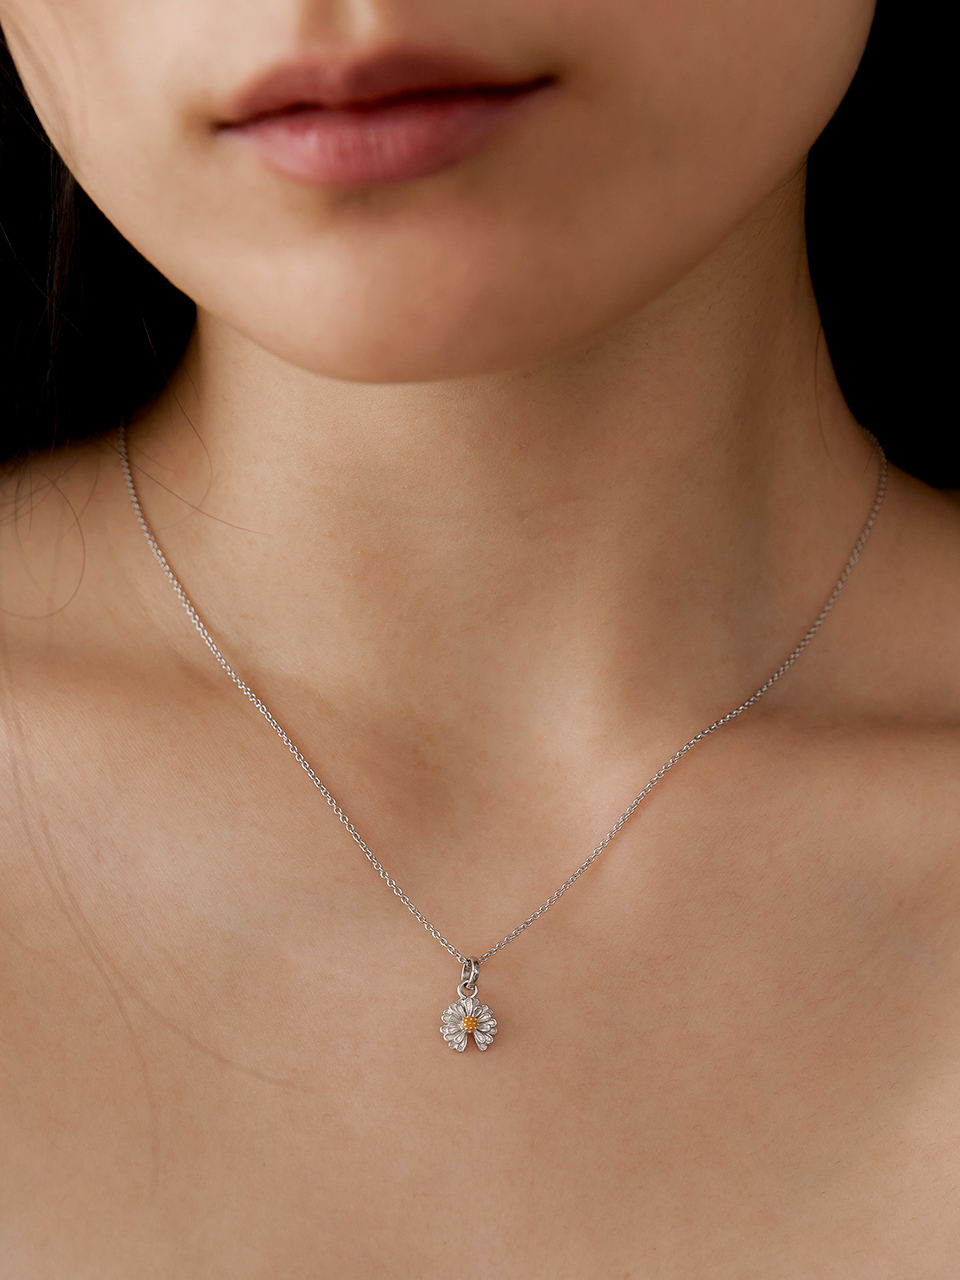 [silver925]Dandelion necklace